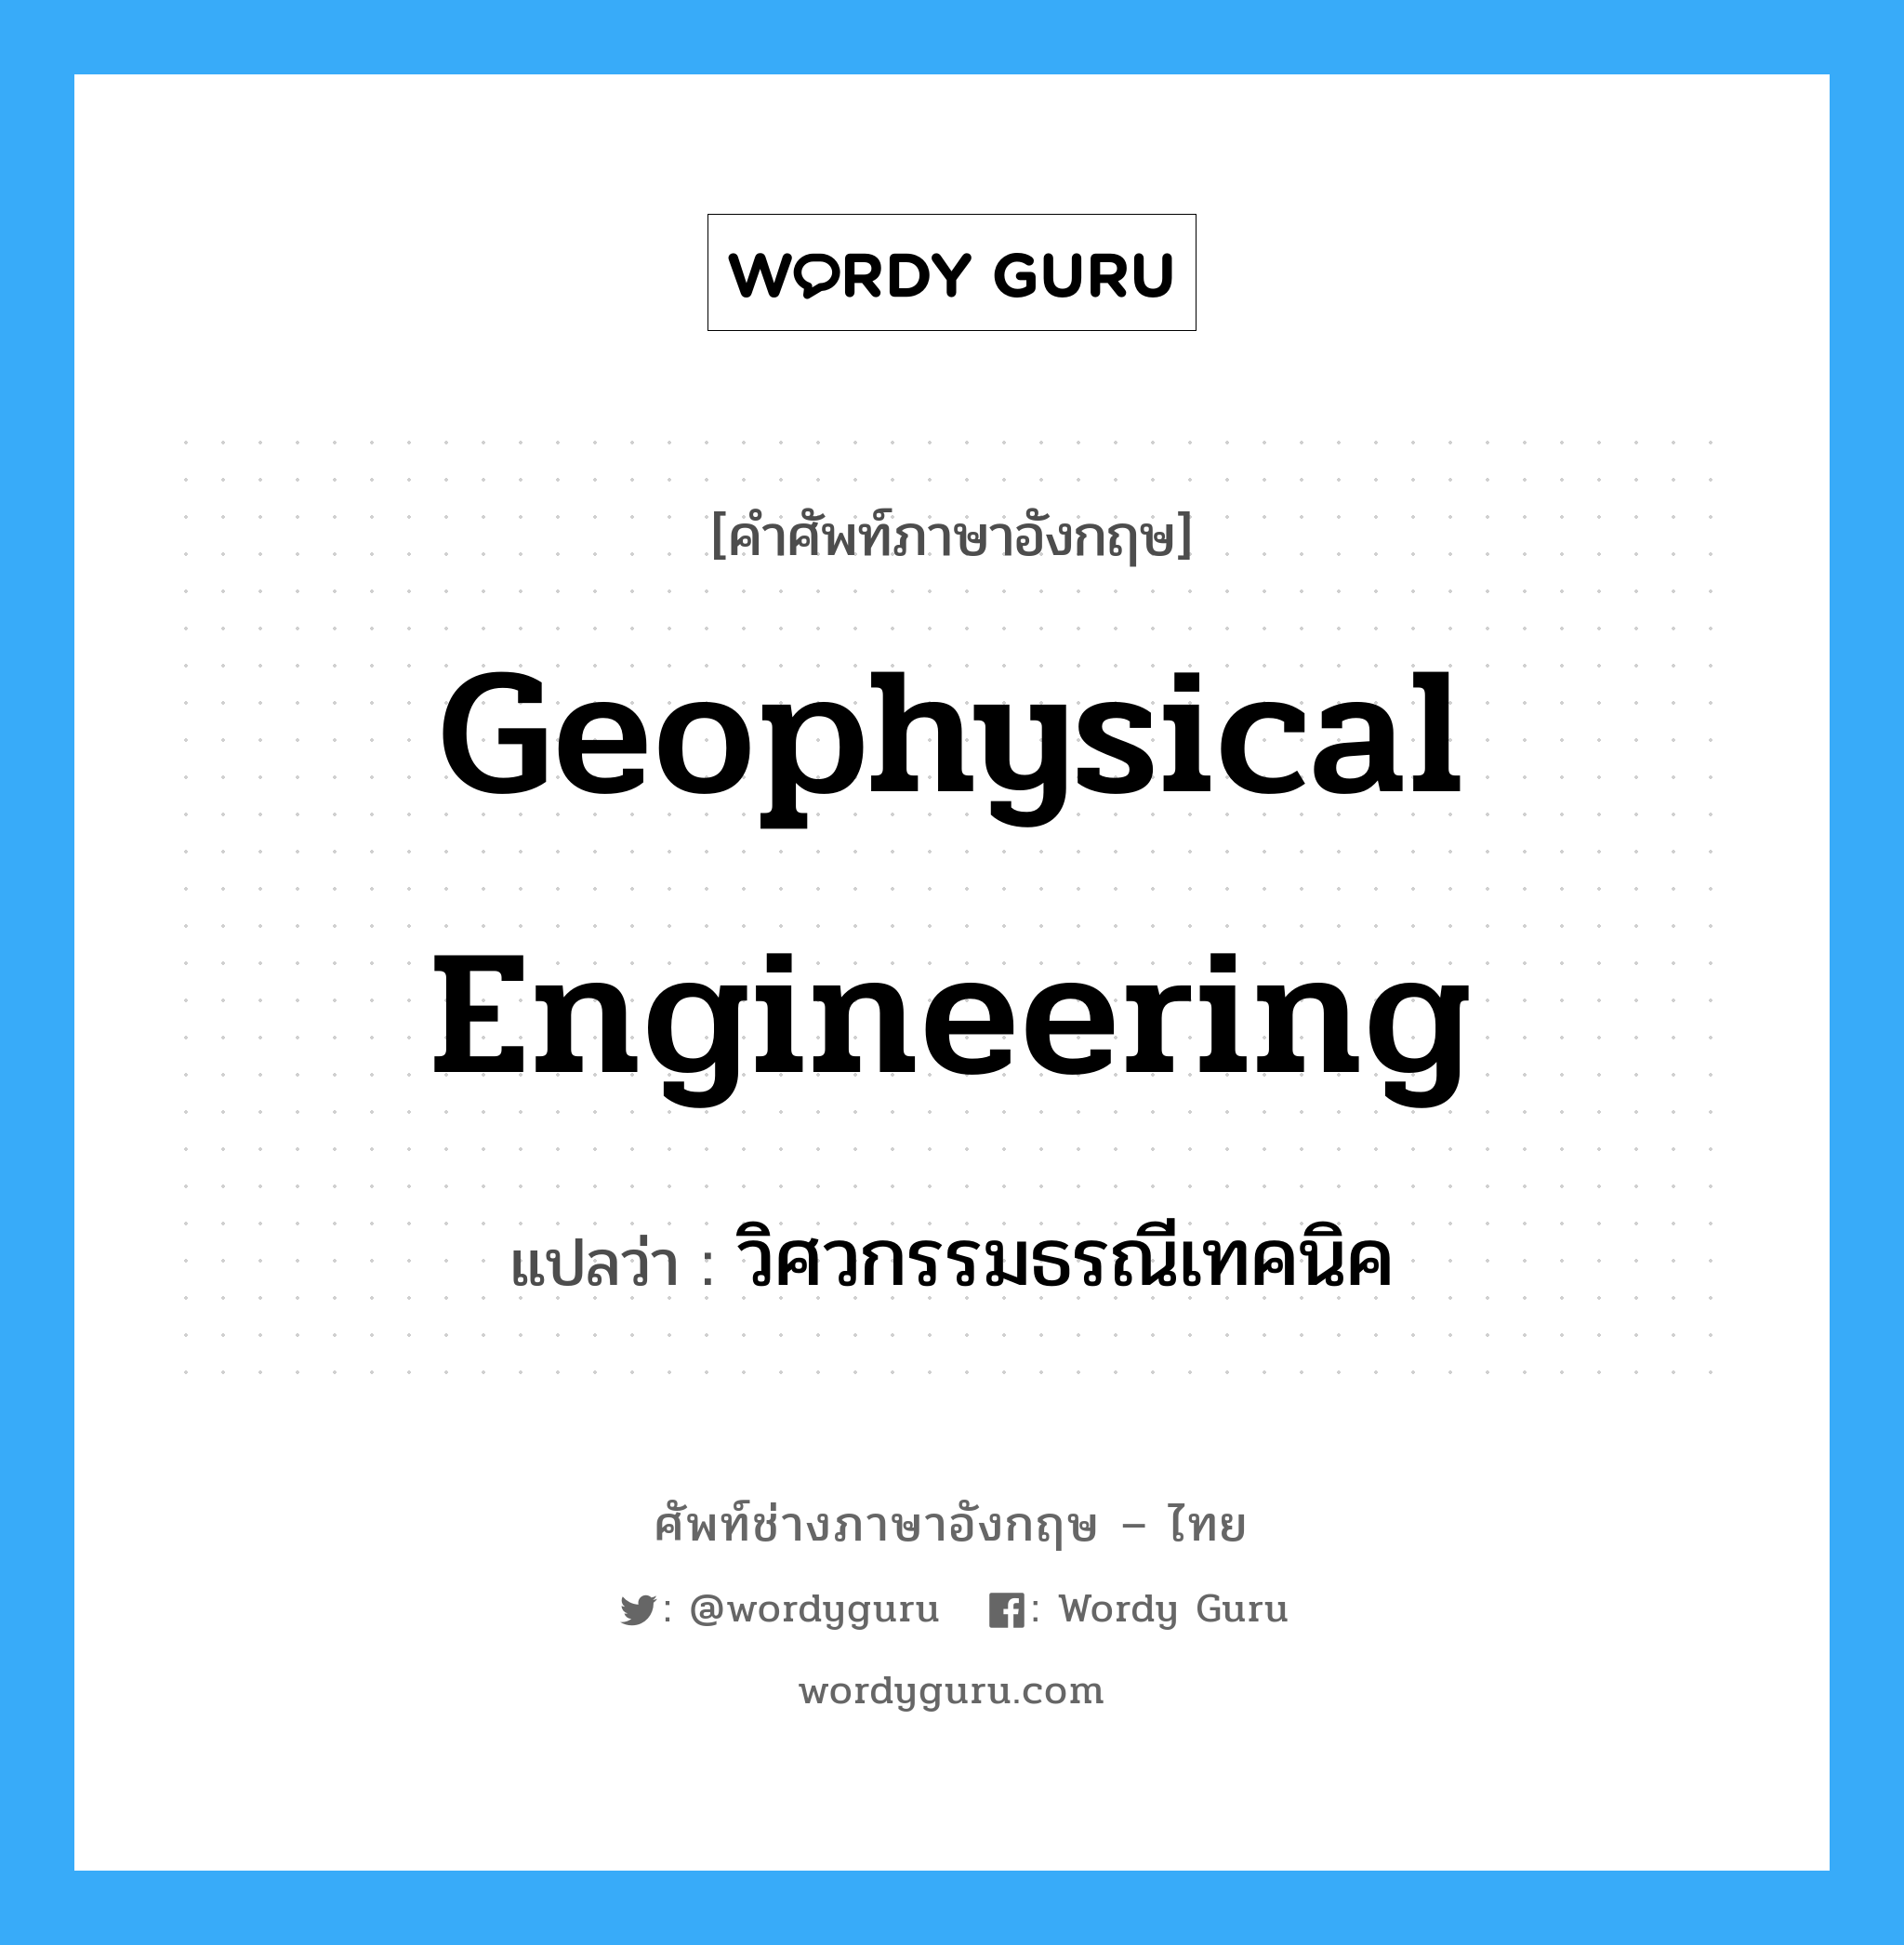 วิศวกรรมธรณีเทคนิค ภาษาอังกฤษ?, คำศัพท์ช่างภาษาอังกฤษ - ไทย วิศวกรรมธรณีเทคนิค คำศัพท์ภาษาอังกฤษ วิศวกรรมธรณีเทคนิค แปลว่า geophysical engineering